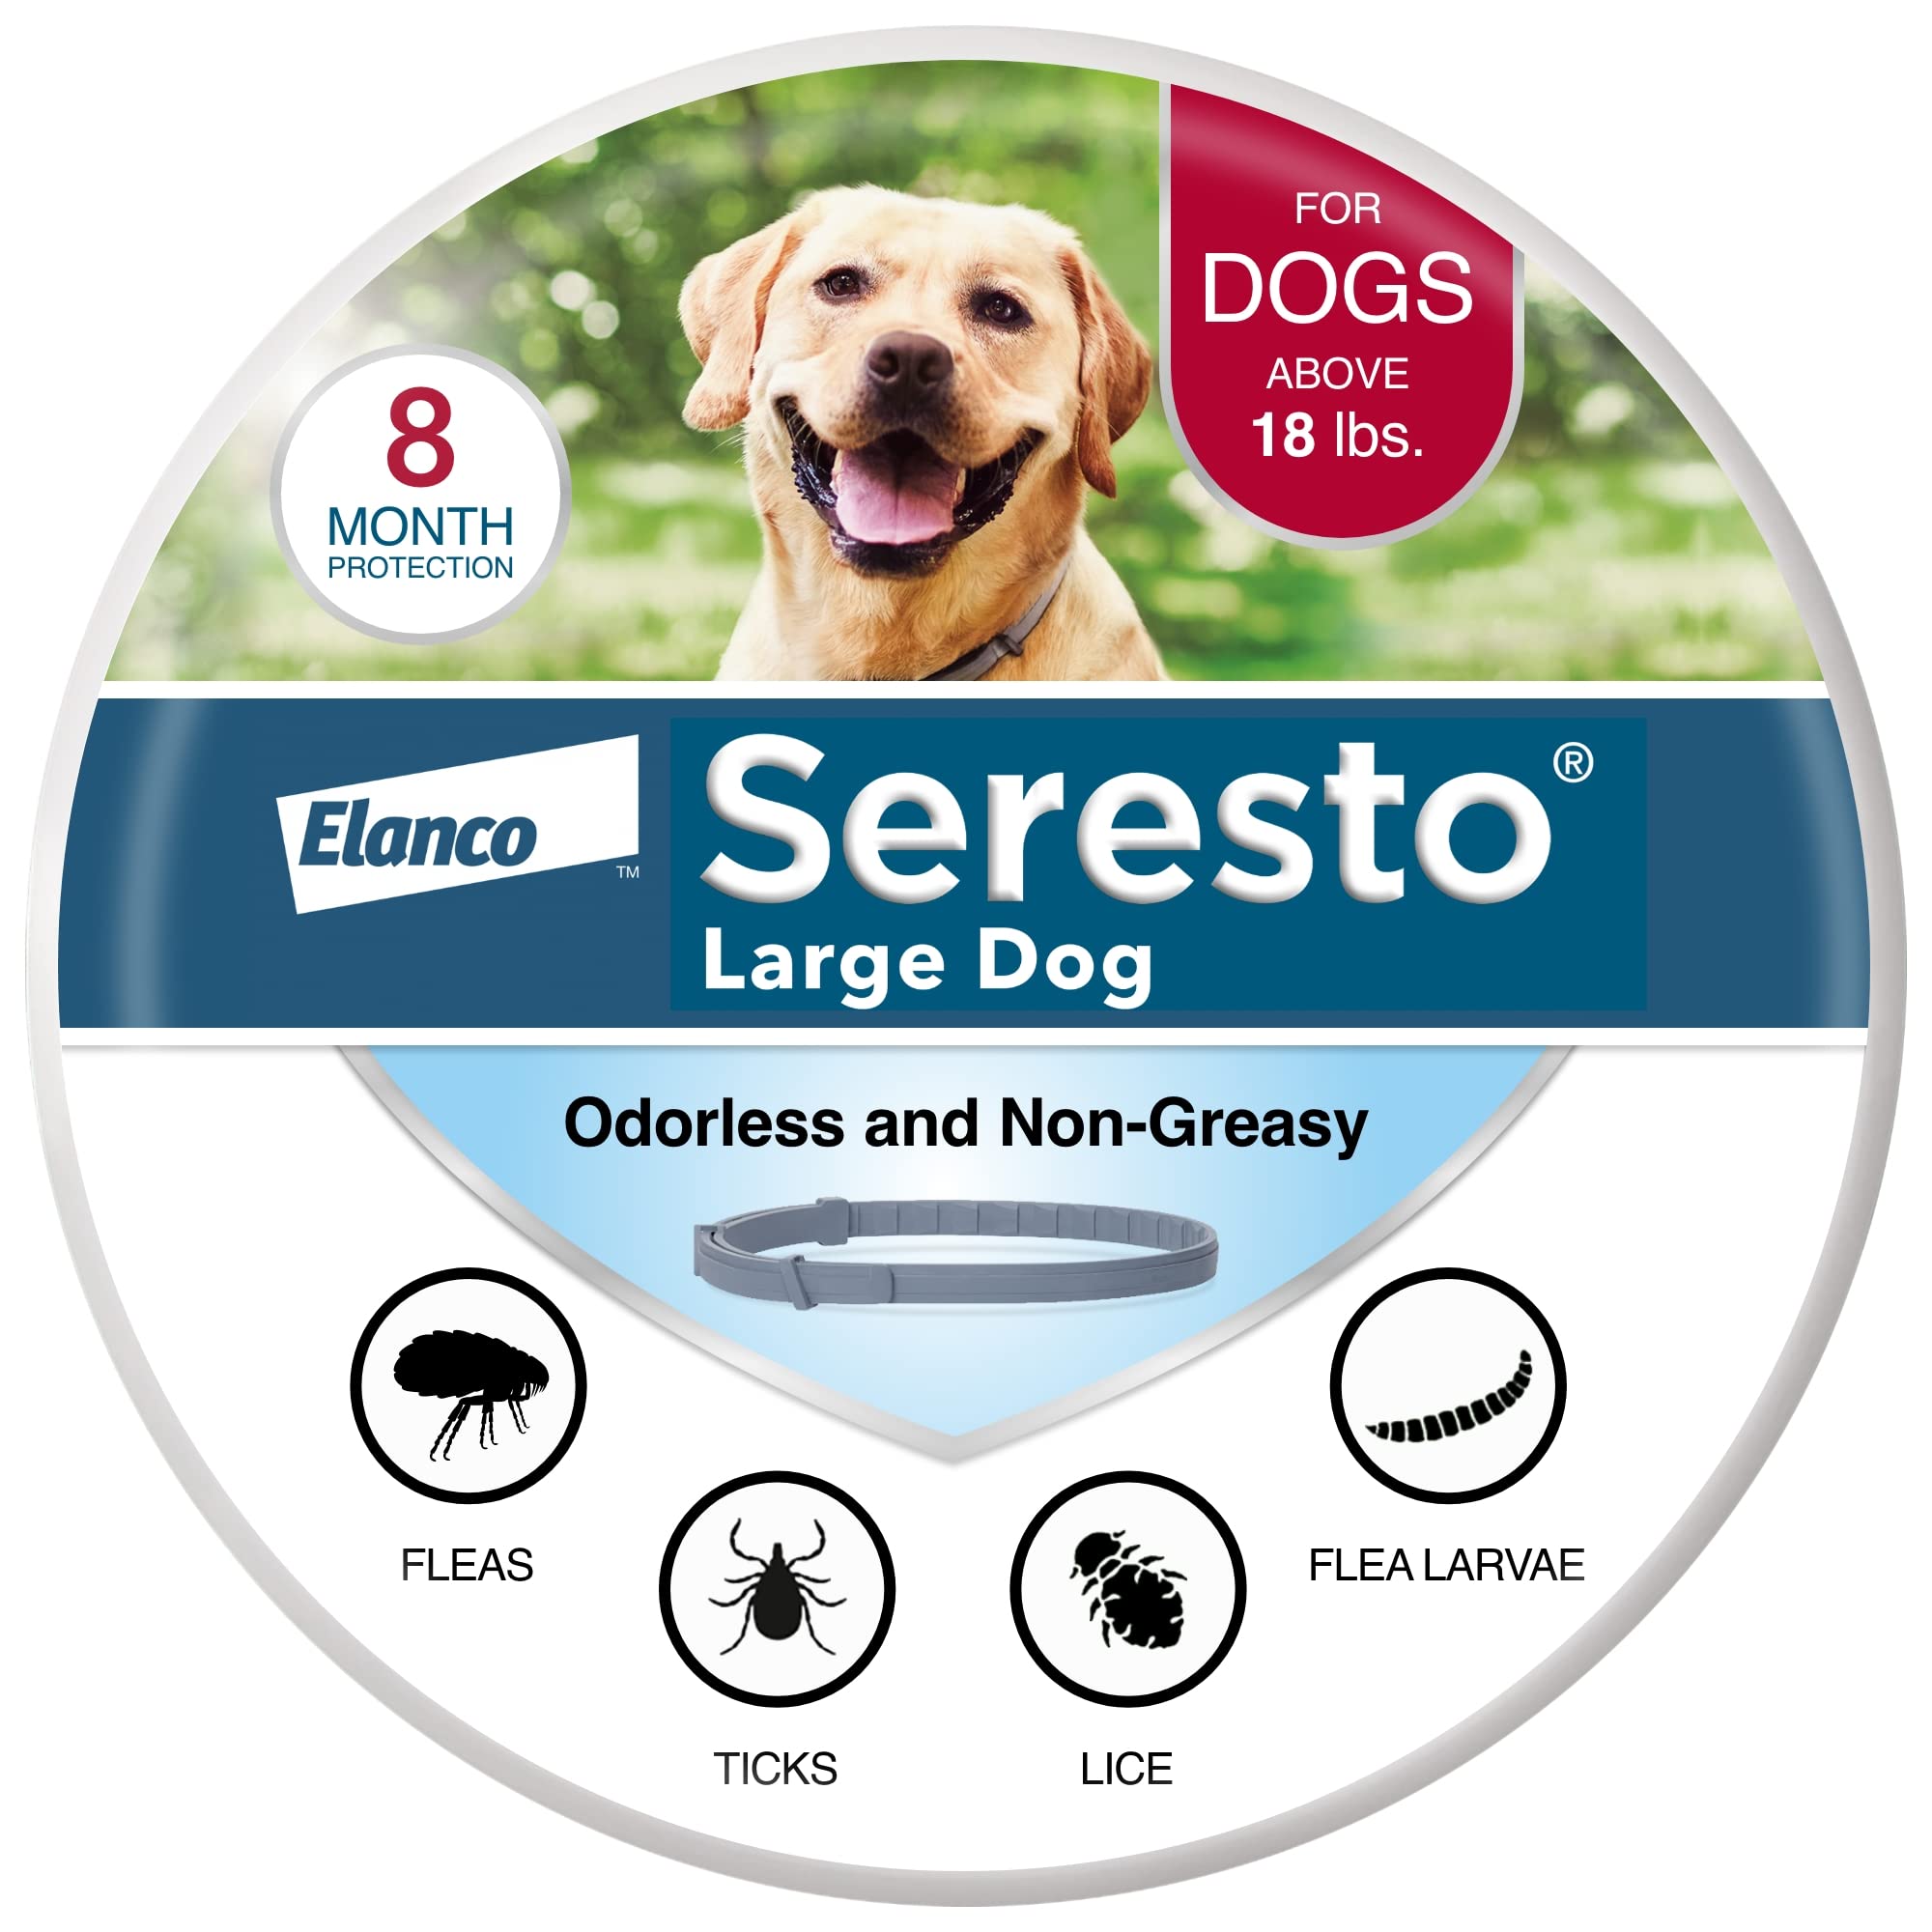 Seresto Vom Tierarzt empfohlenes Halsband zur Behandlung und Vorbeugung von Flöhen und Zecken bei großen Hunden für Hunde über 18 Pfund. | 8 Monate Schutz